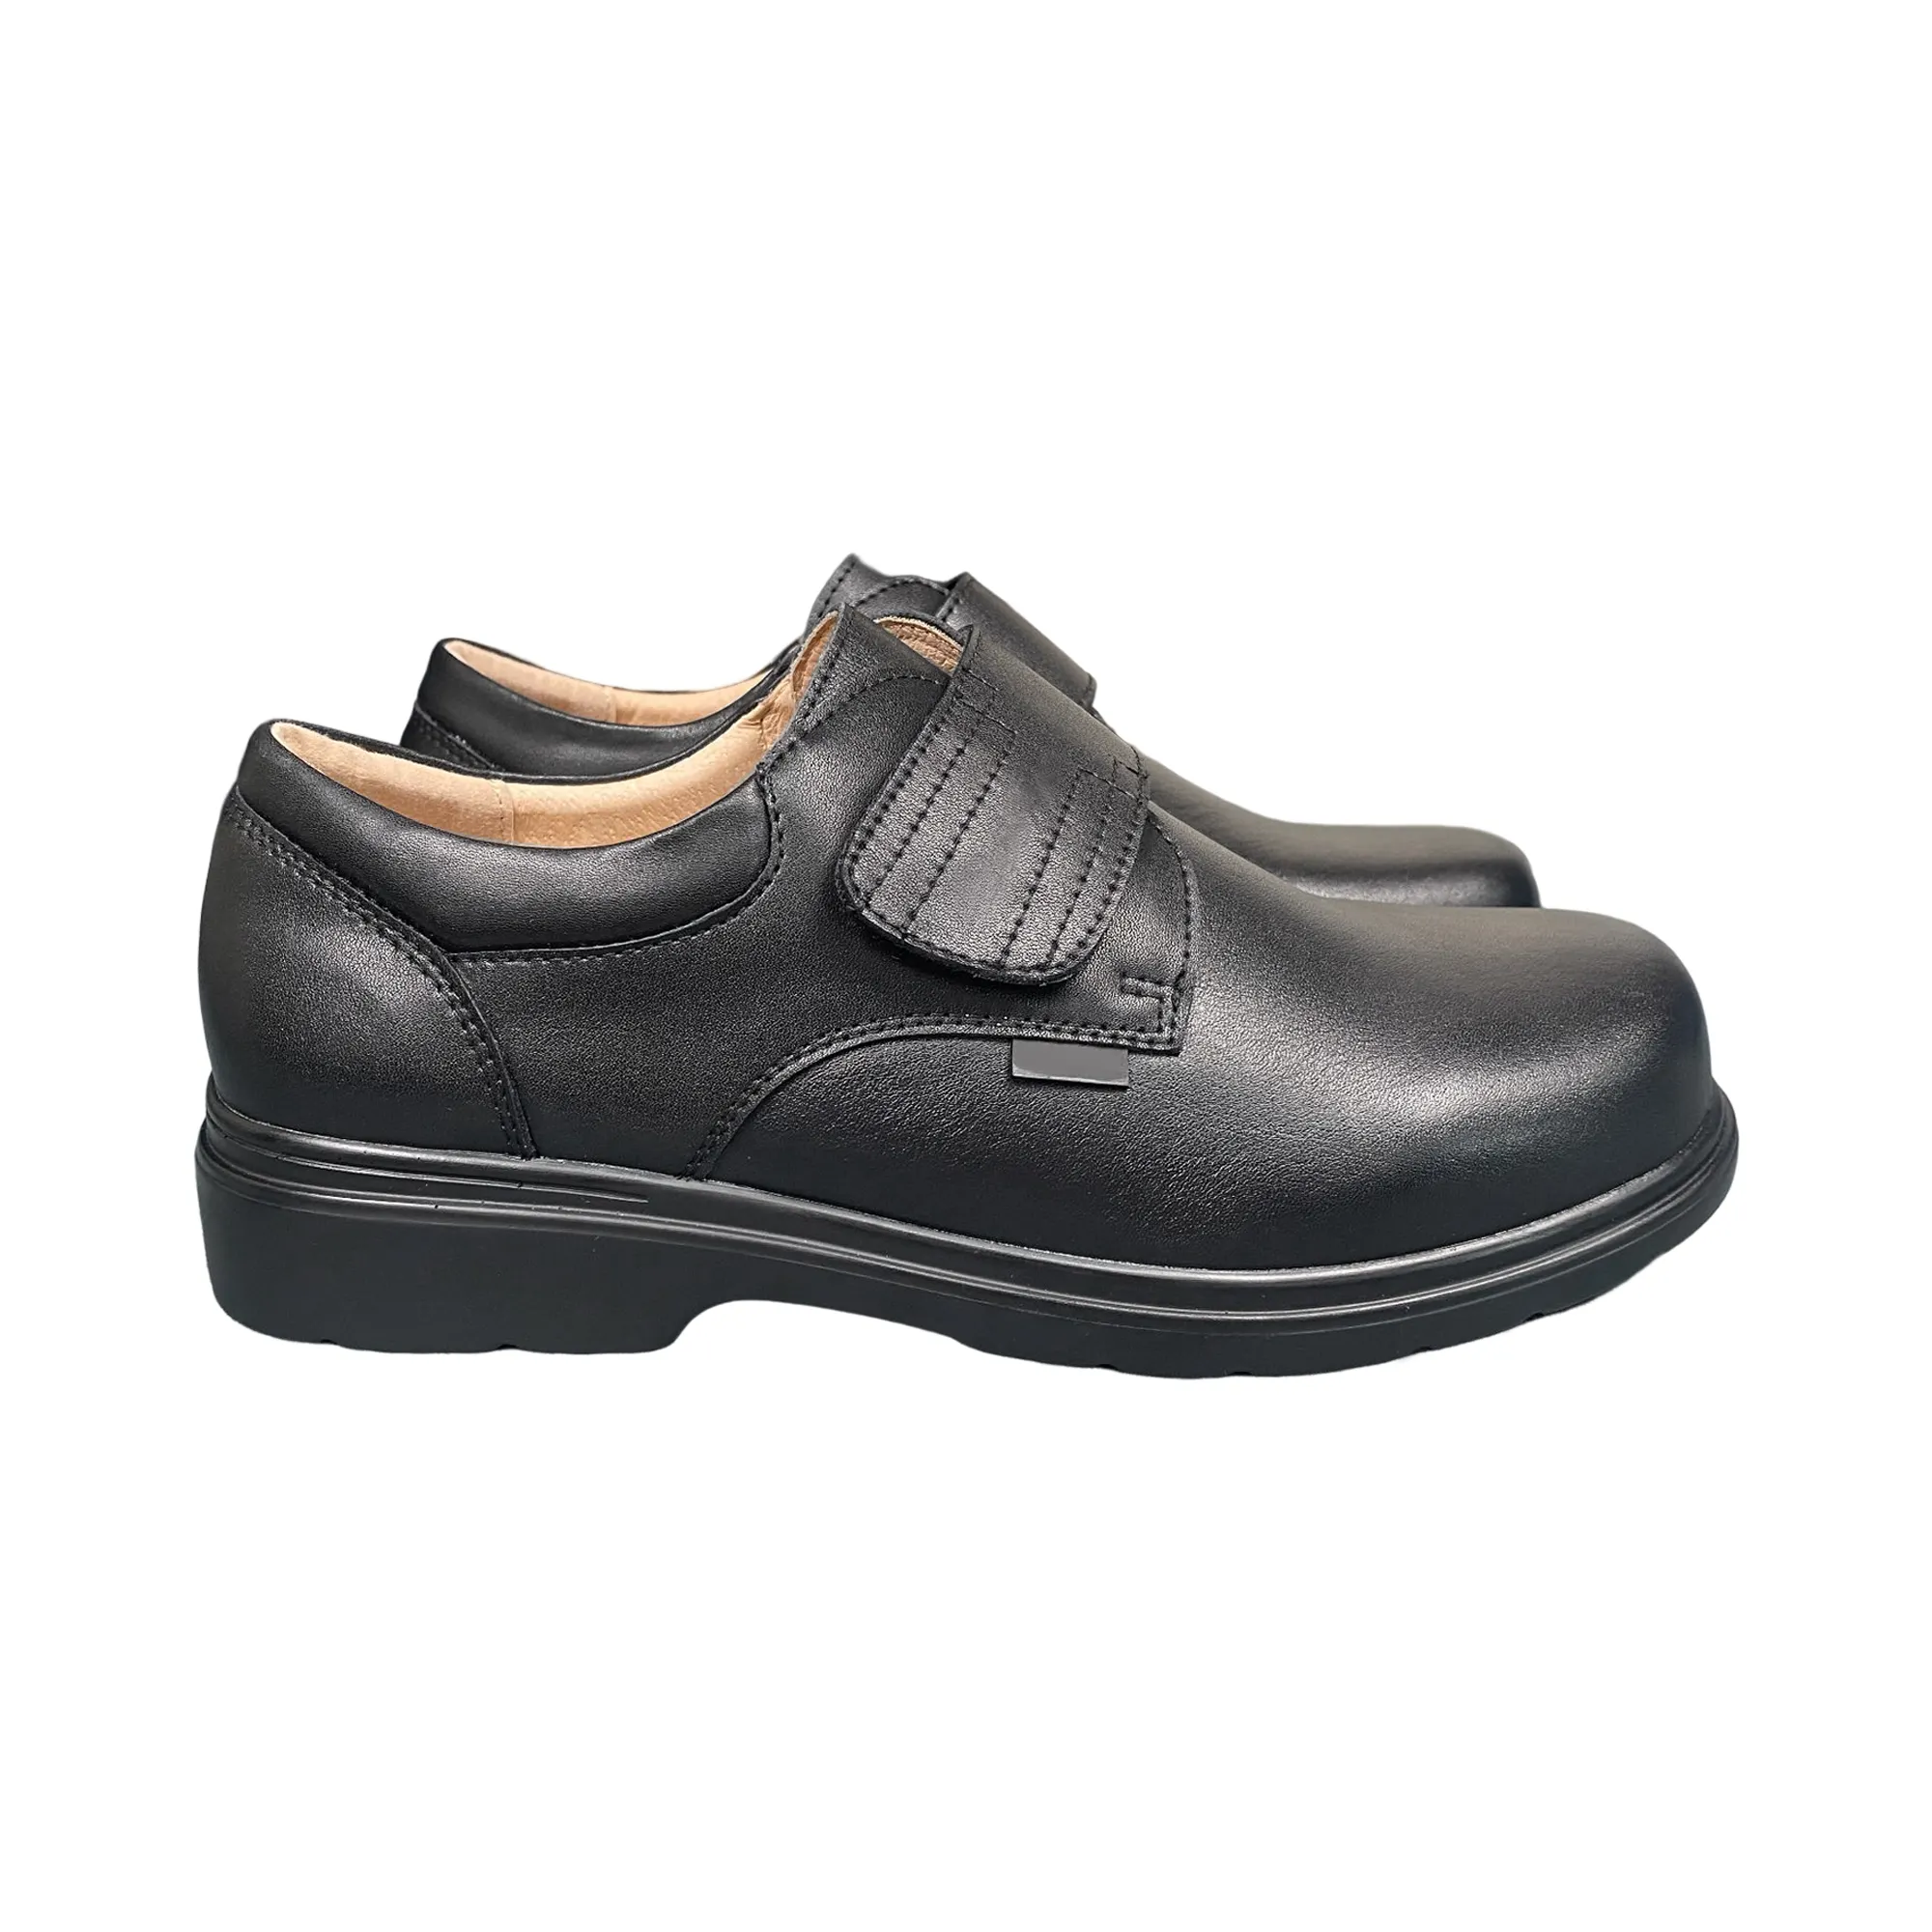 Mens Moccasin trượt trên da chính hãng Loafer thoải mái giày thường Giày thời trang giày màu đen ăn mặc giản dị cho nam giới